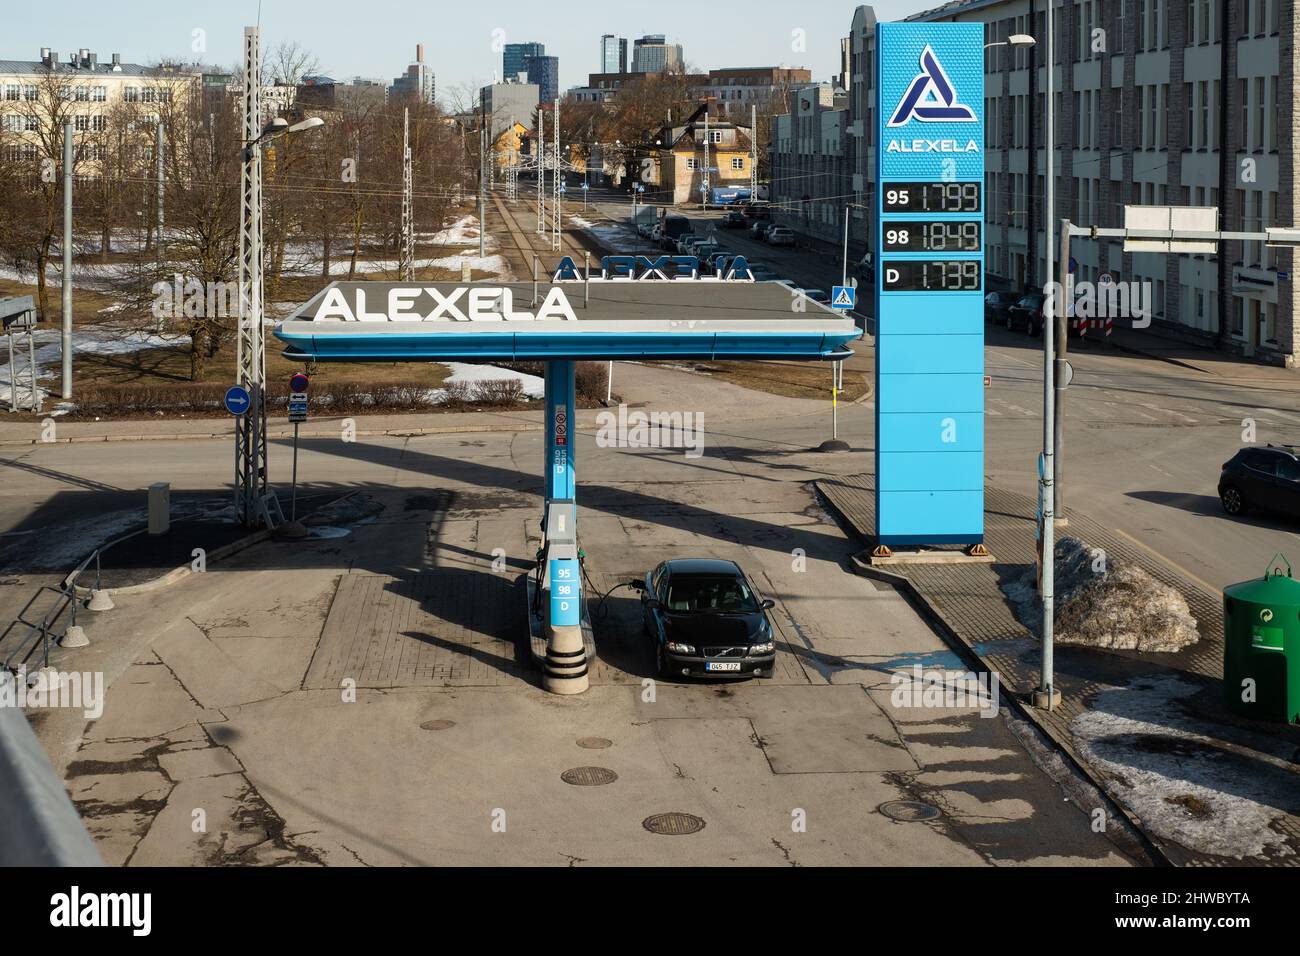 Rekordpreise für Kraftstoff in der Tankstelle Alexela in der Europäischen Union. Kraftstoffkrise. Stockfoto